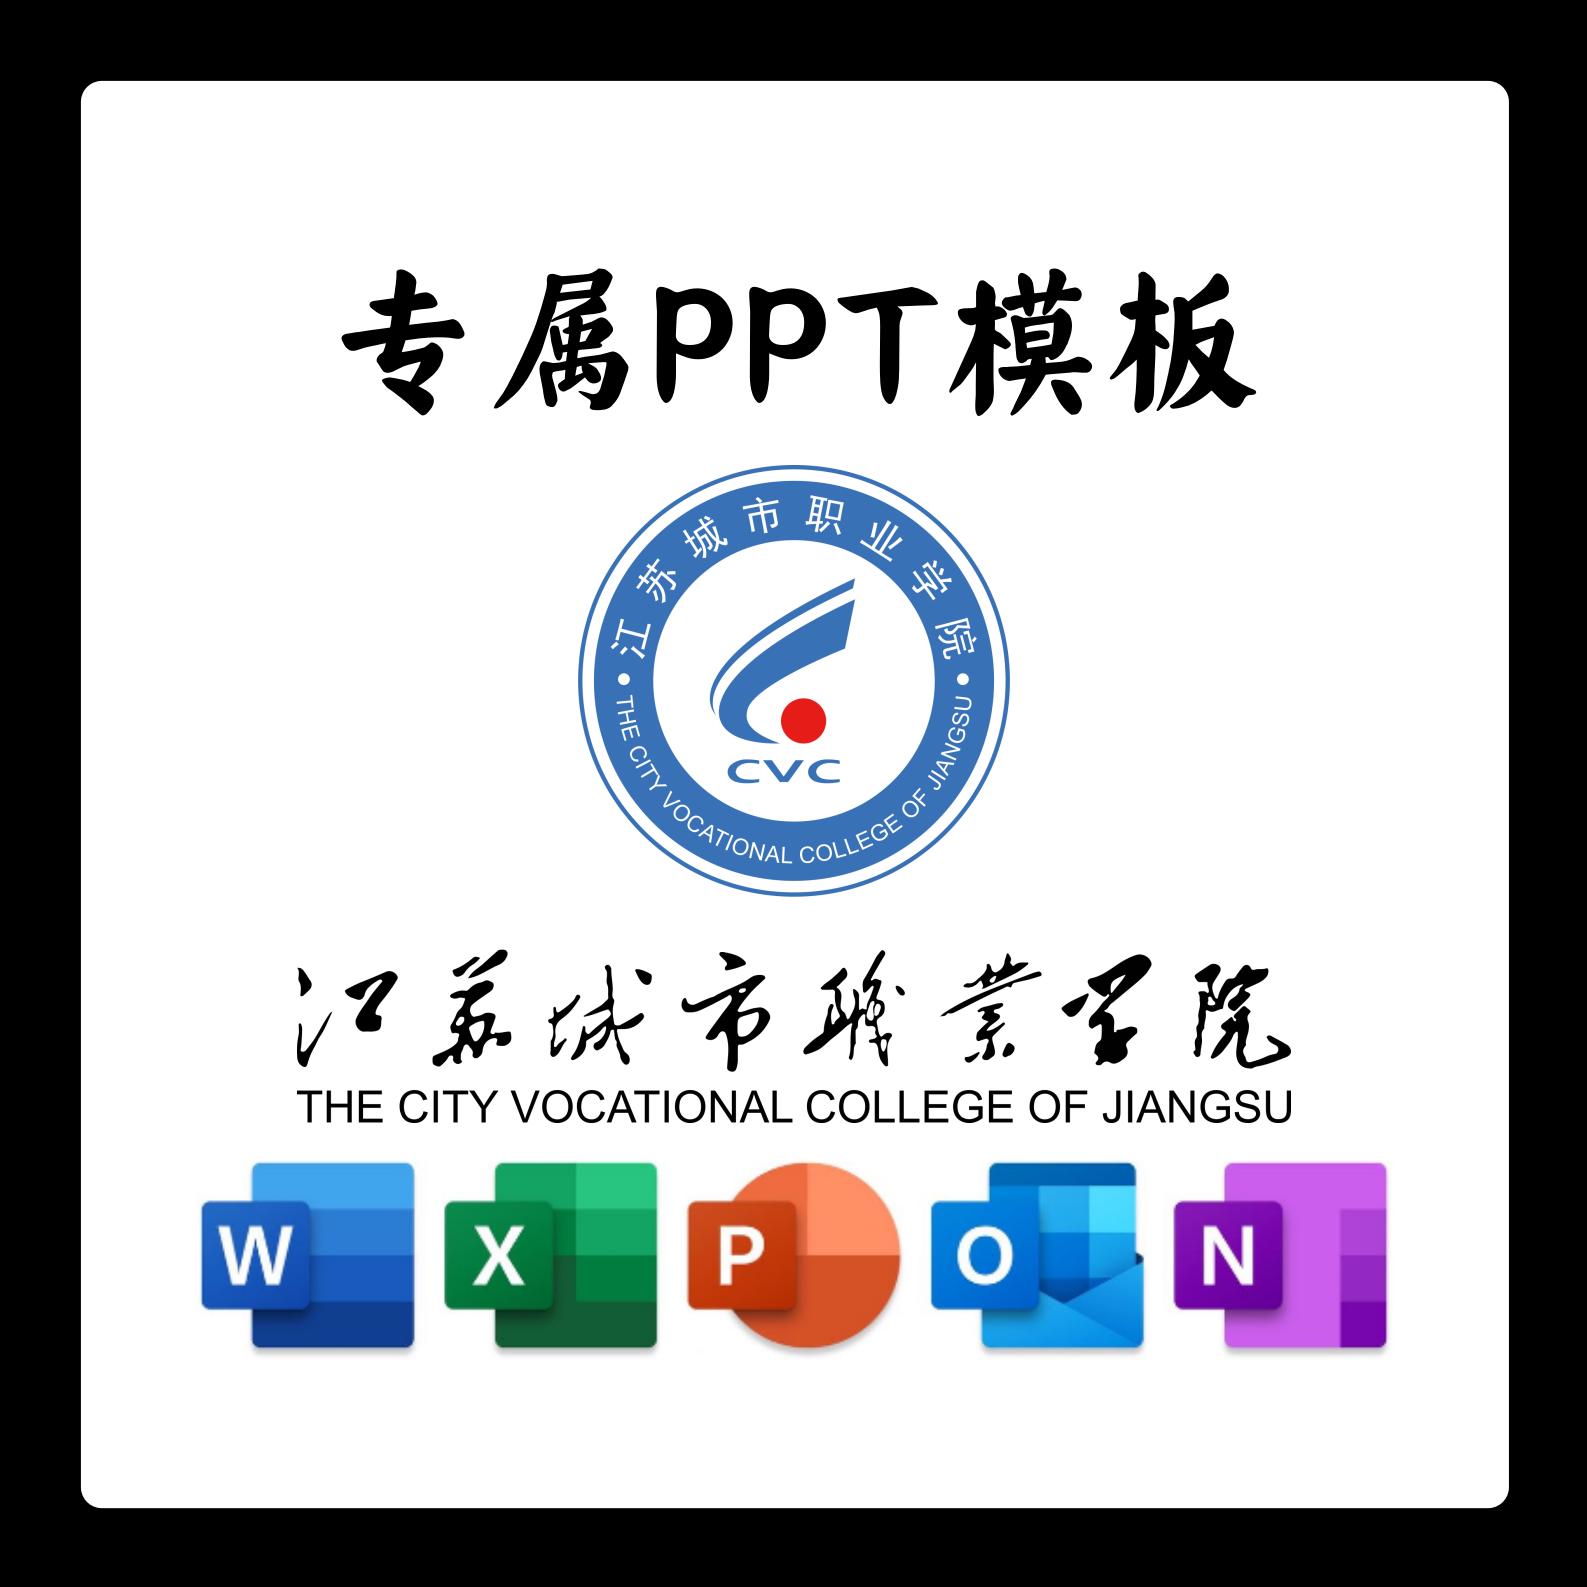 江苏城市职业学院PPT模板答辩PPT开题中期结题毕业答辩简约大气